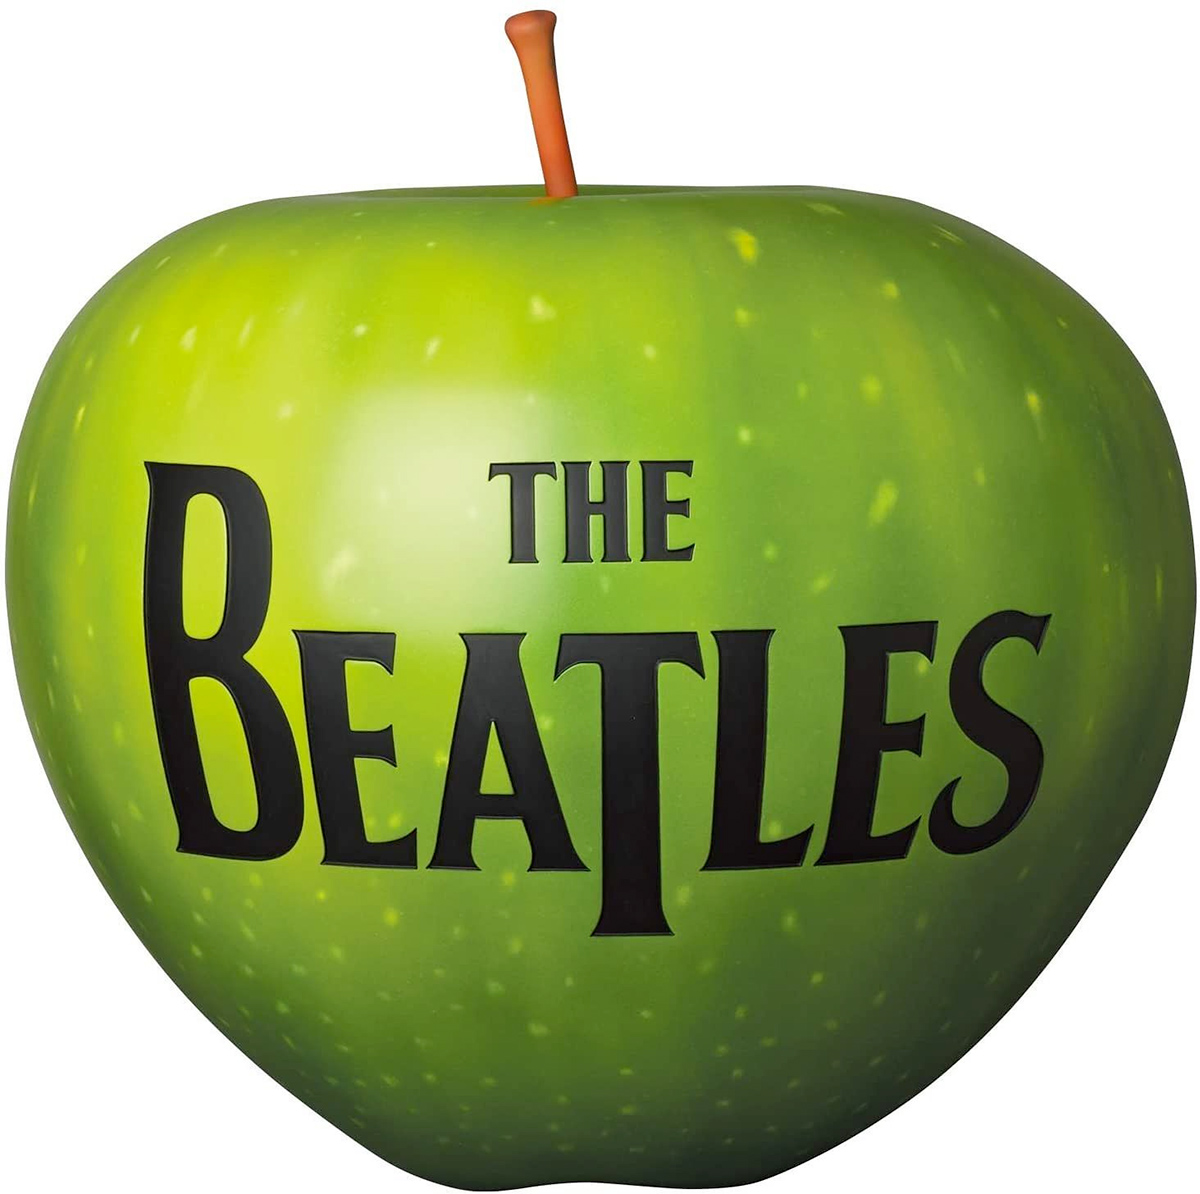 The Beatles Apple Colour Version Statue